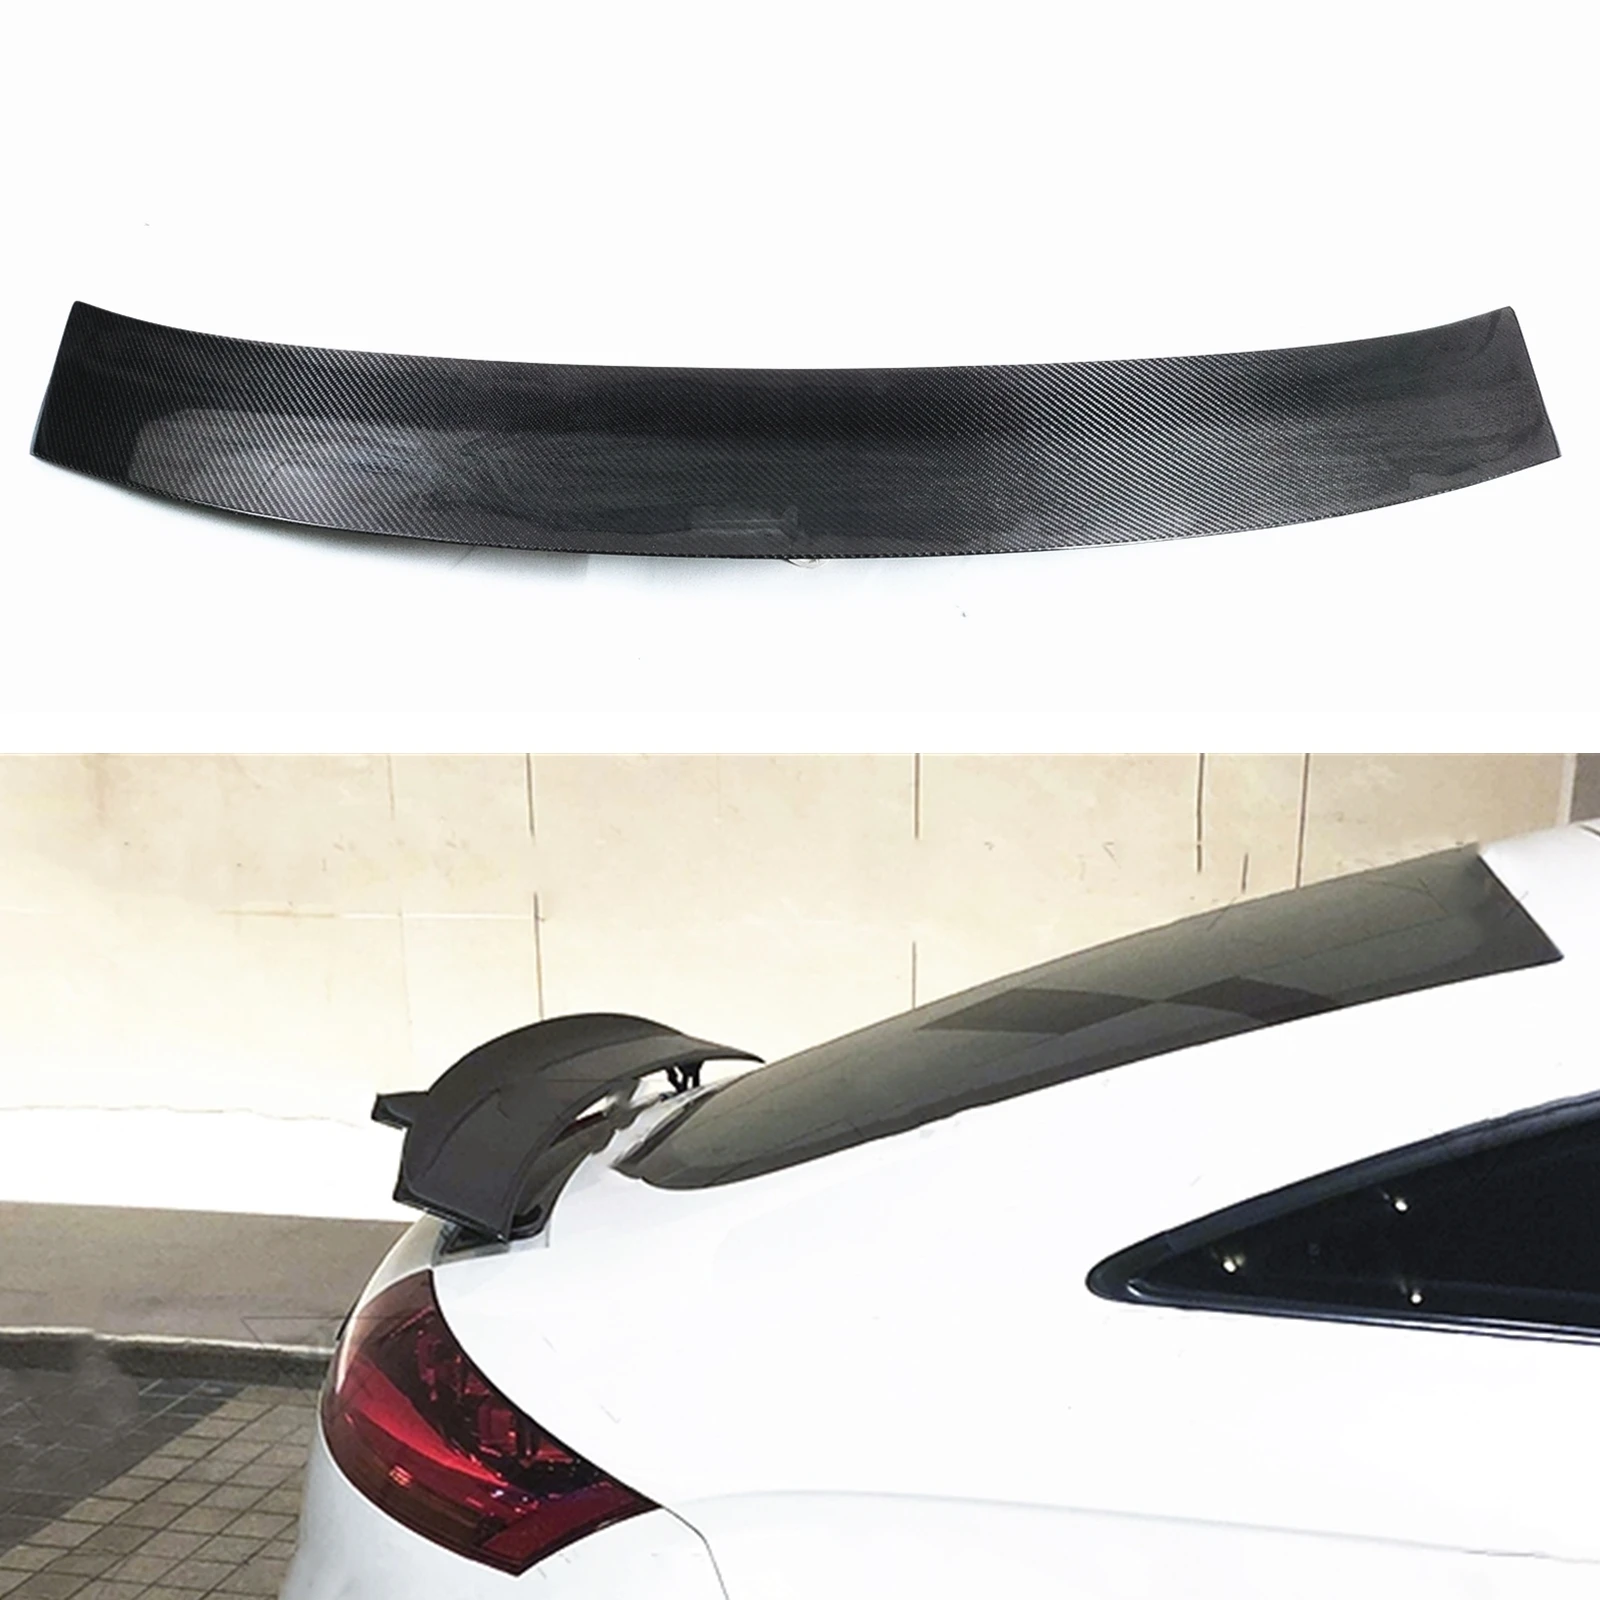 

Автомобильный задний спойлер из углеродного волокна для крыльев багажника, комплект для Audi MK2 TT 8J TTS 2008-2014